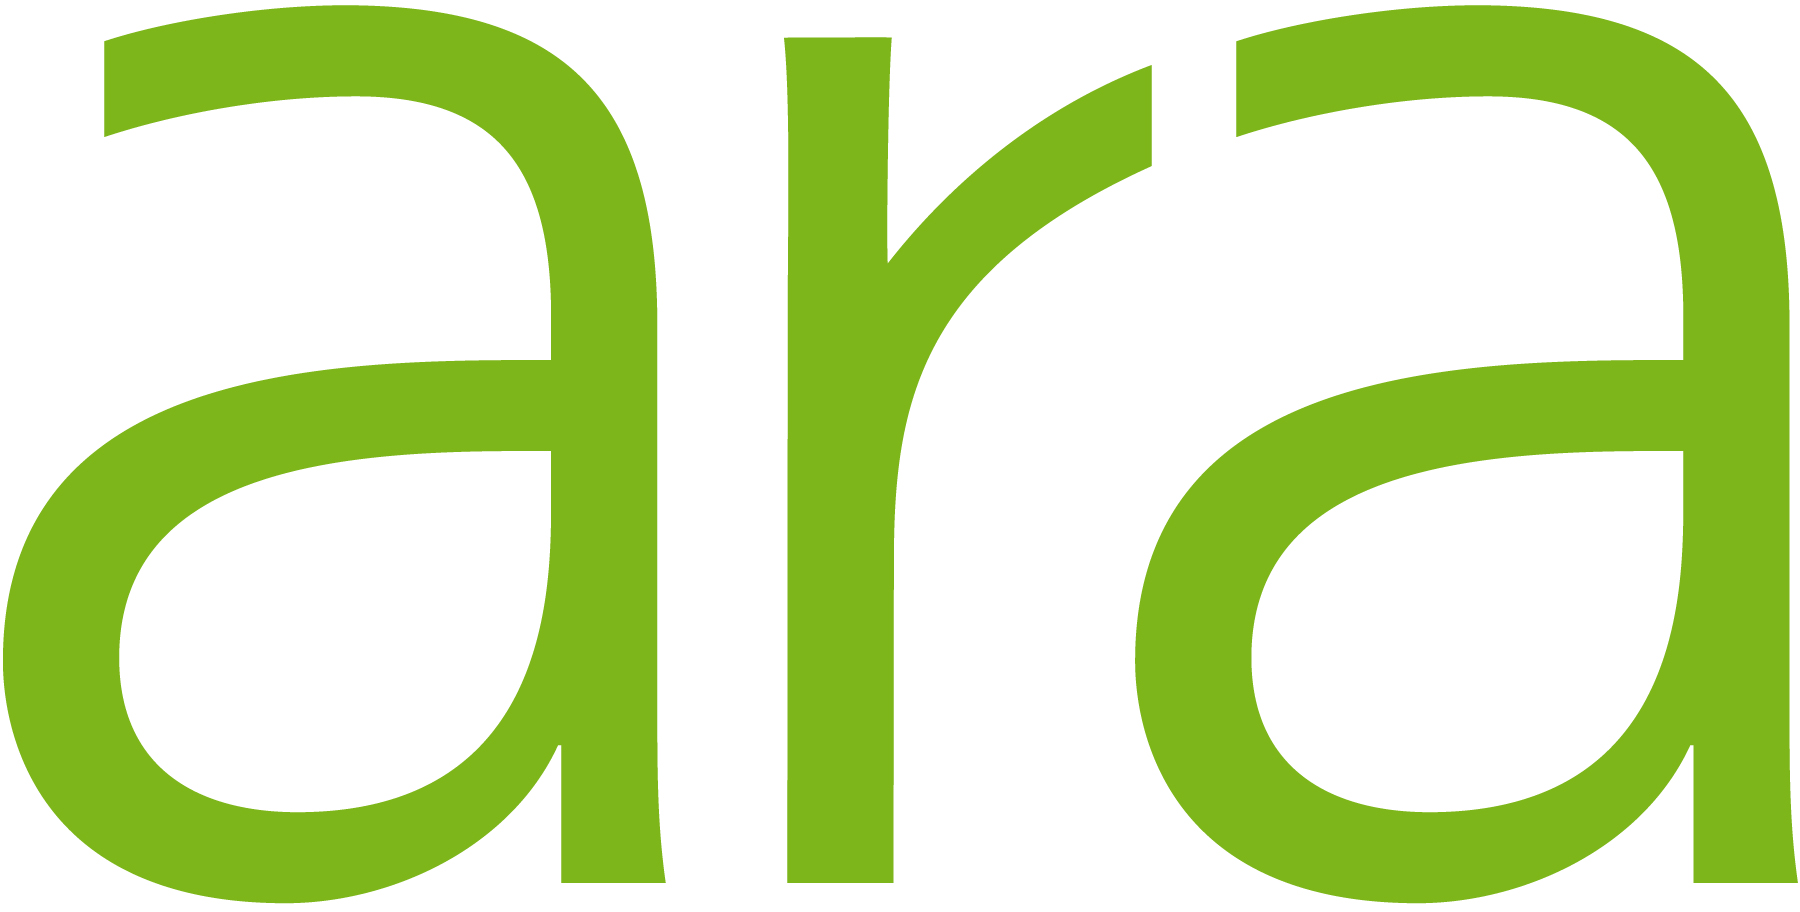 Aran logo